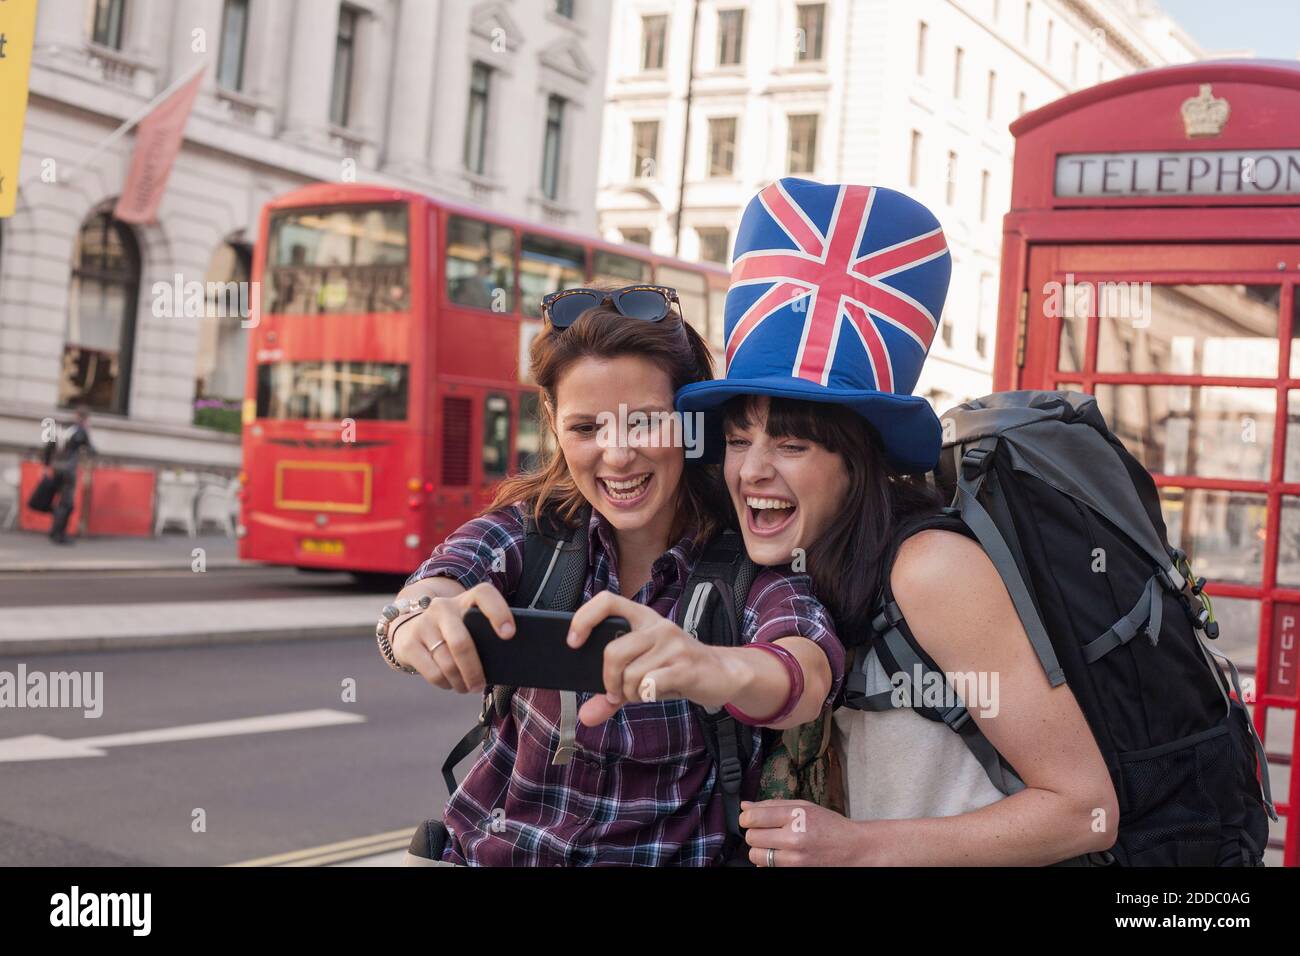 Bonne femme qui prend le selfie avec un ami portant un chapeau drapeau britannique contre la boîte téléphonique rouge en ville Banque D'Images